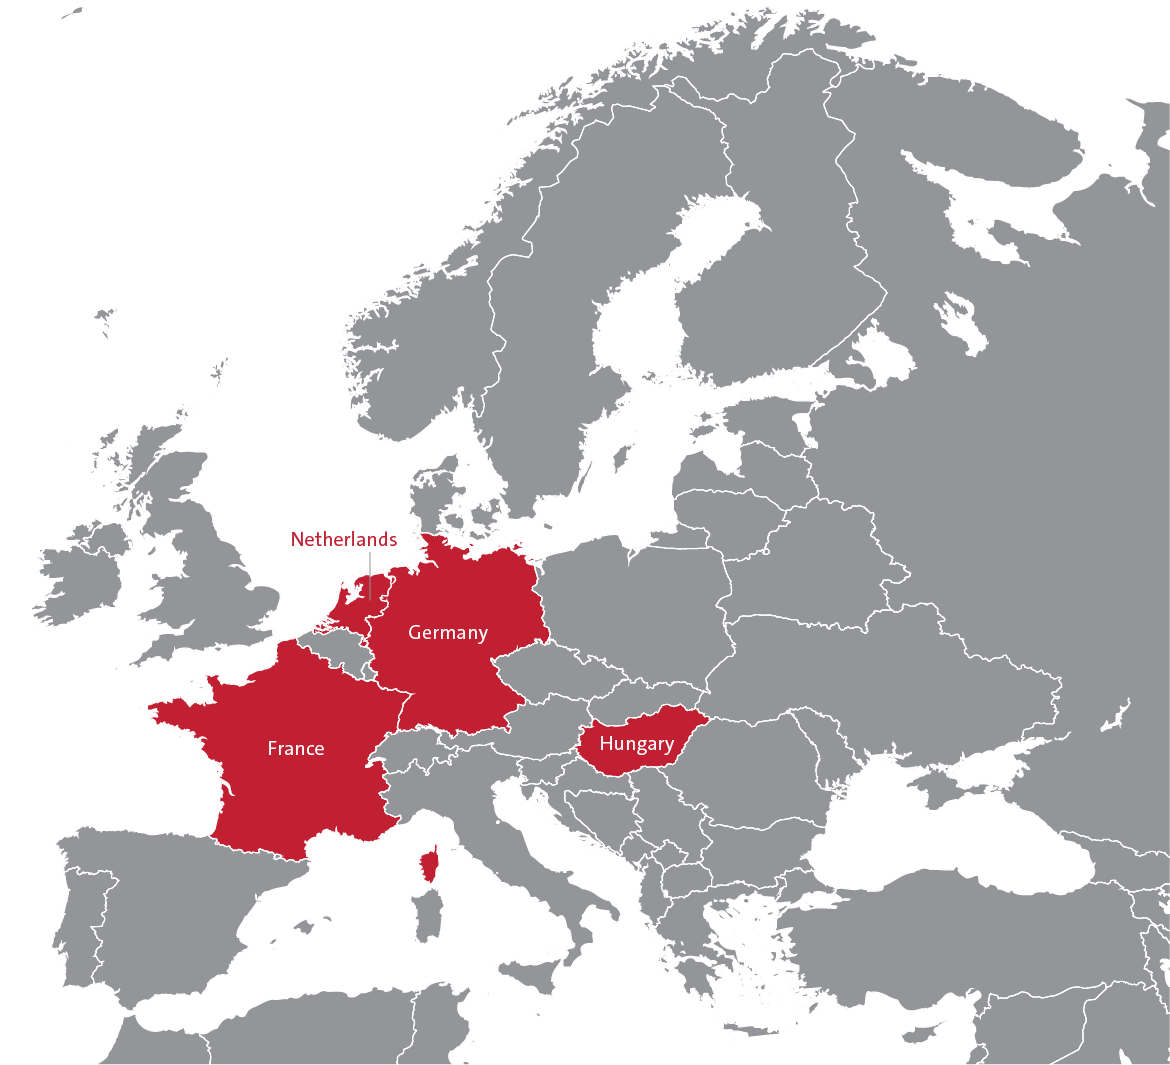 Top EU notifying countries